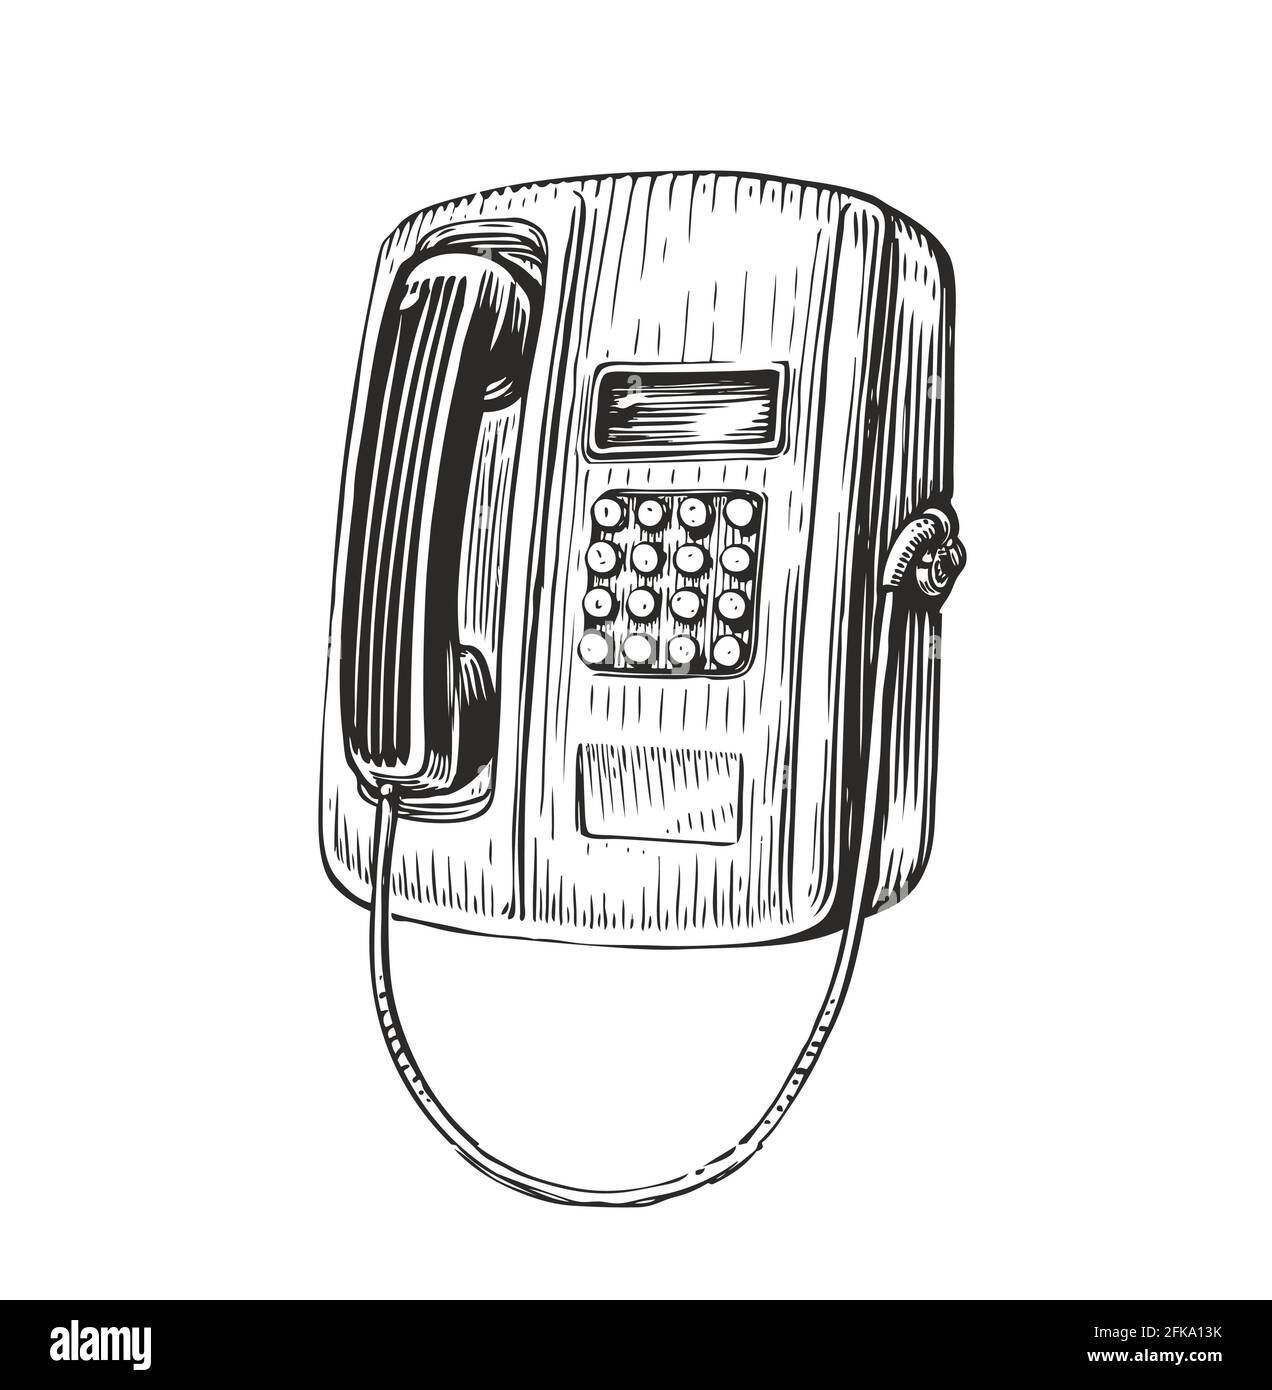 Schizzo retro del telefono a pagamento. Telefono pubblico in stile d'incisione vintage. Illustrazione vettoriale Illustrazione Vettoriale